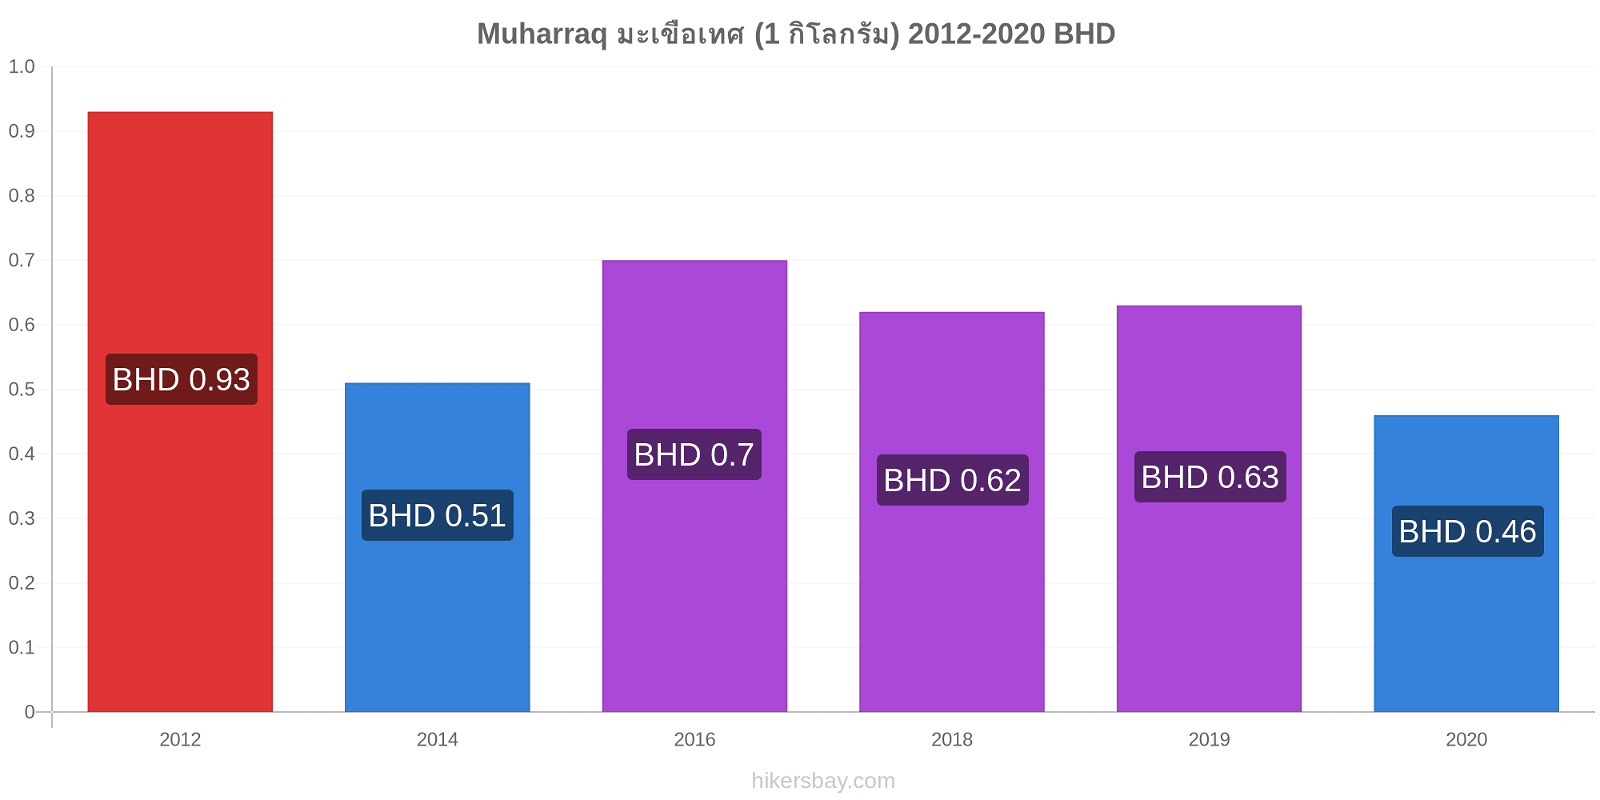 Muharraq การเปลี่ยนแปลงราคา มะเขือเทศ (1 กิโลกรัม) hikersbay.com